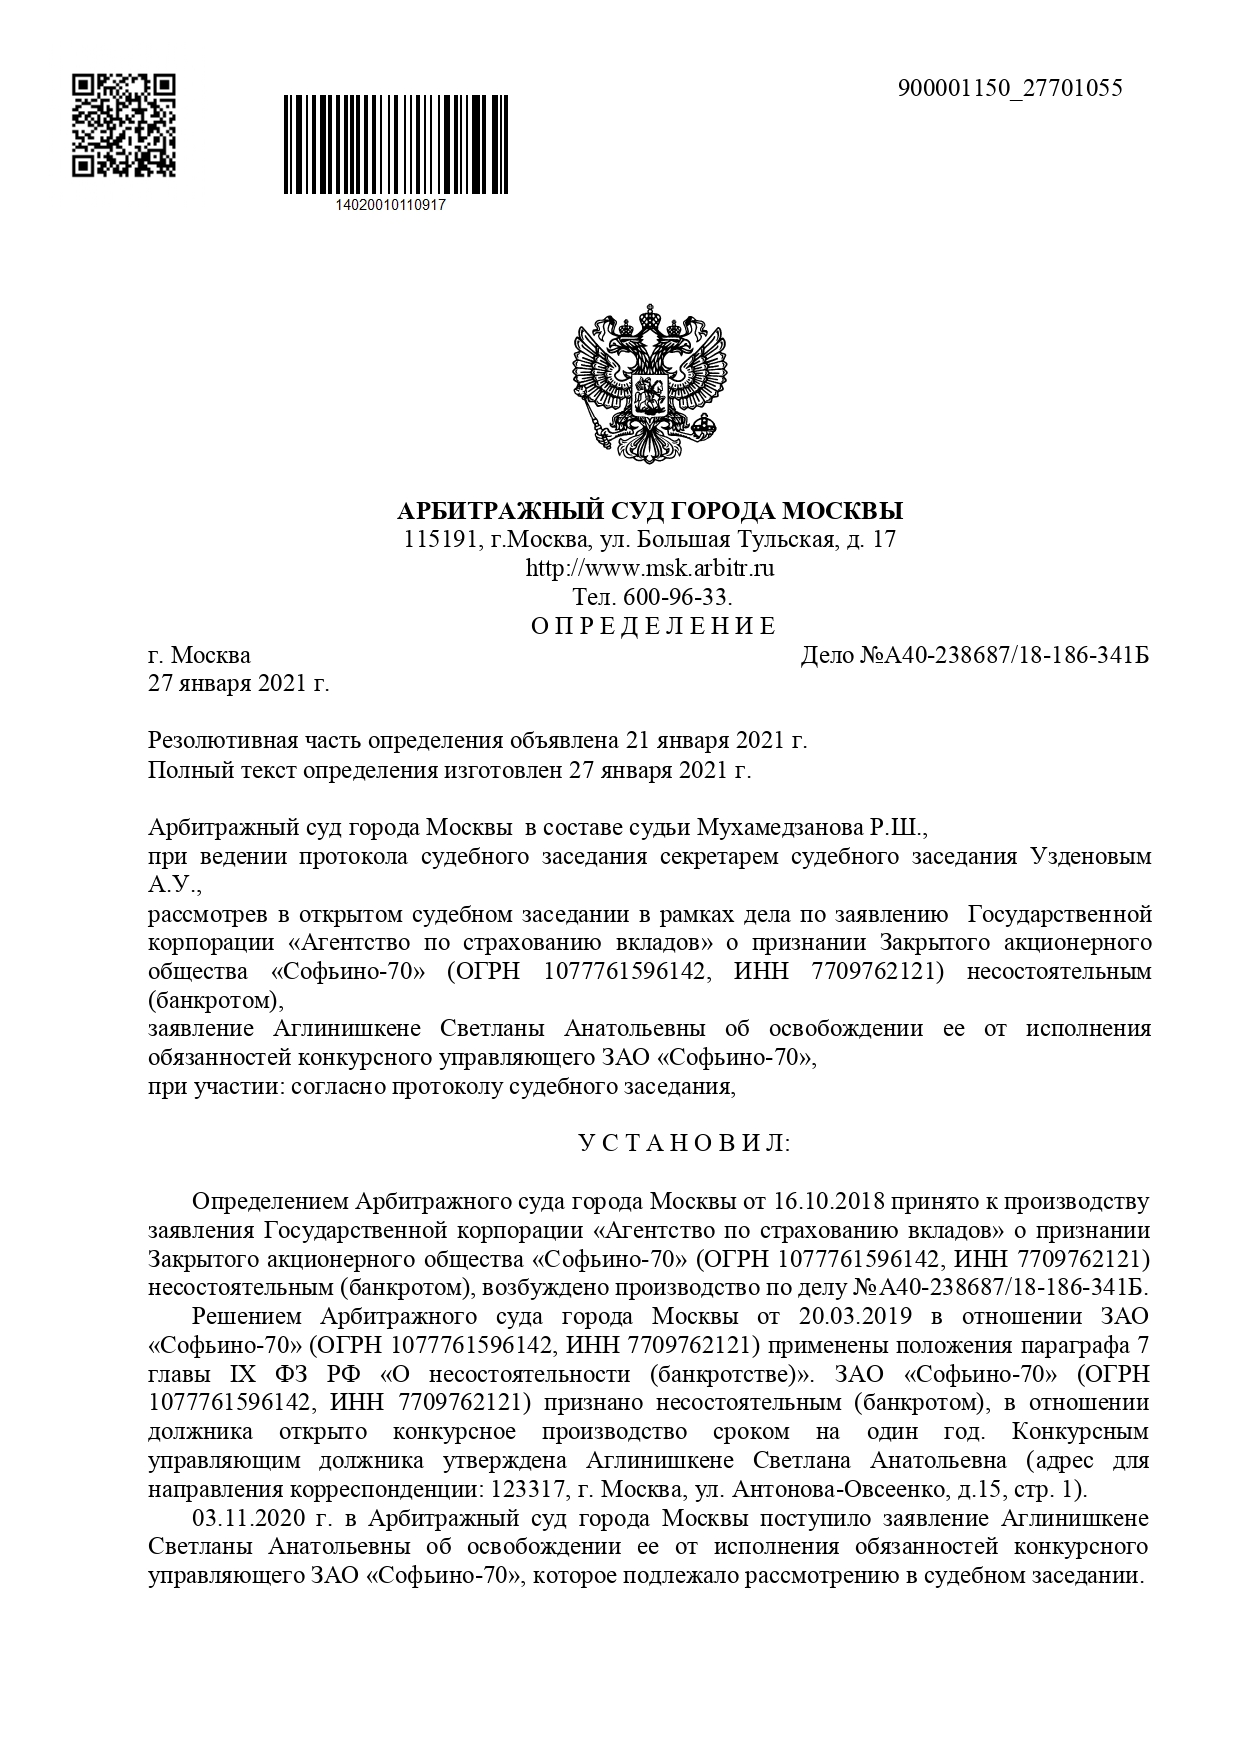 Определение Арбитражного суда г. Москвы от 27.01.2021 года